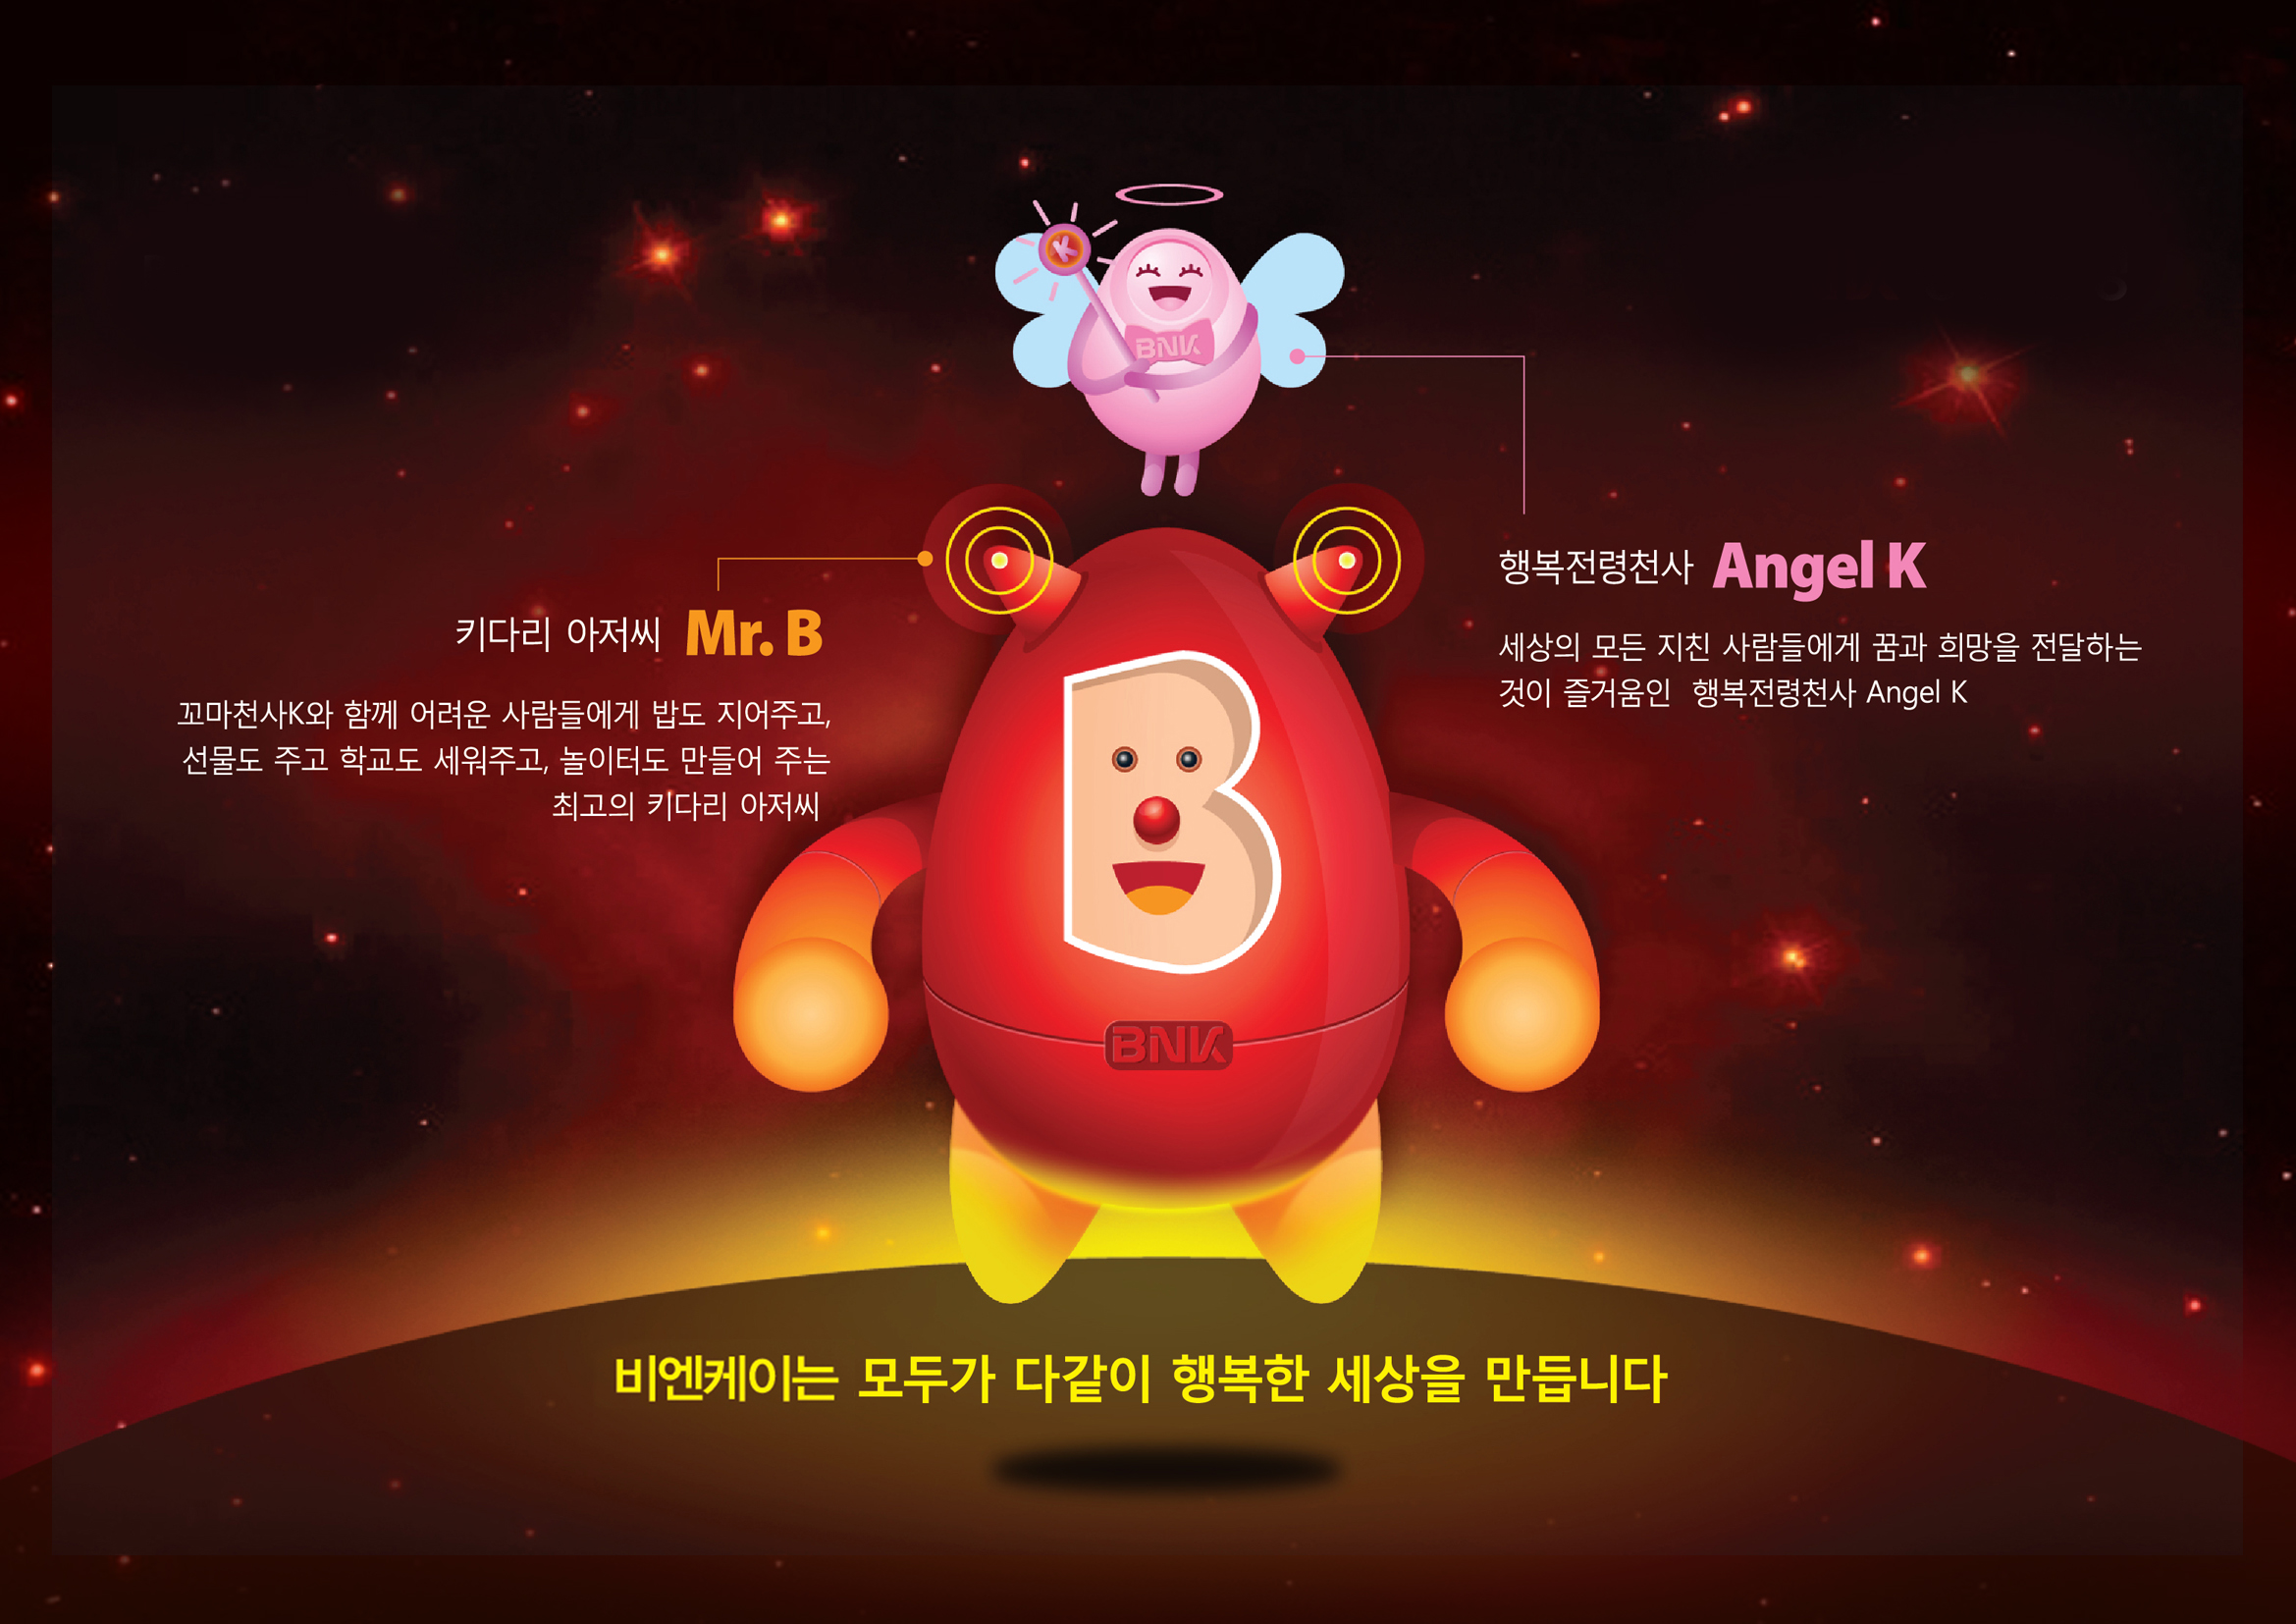 BNK금융그룹 캐릭터인 Mr.B와 Angel K 소개